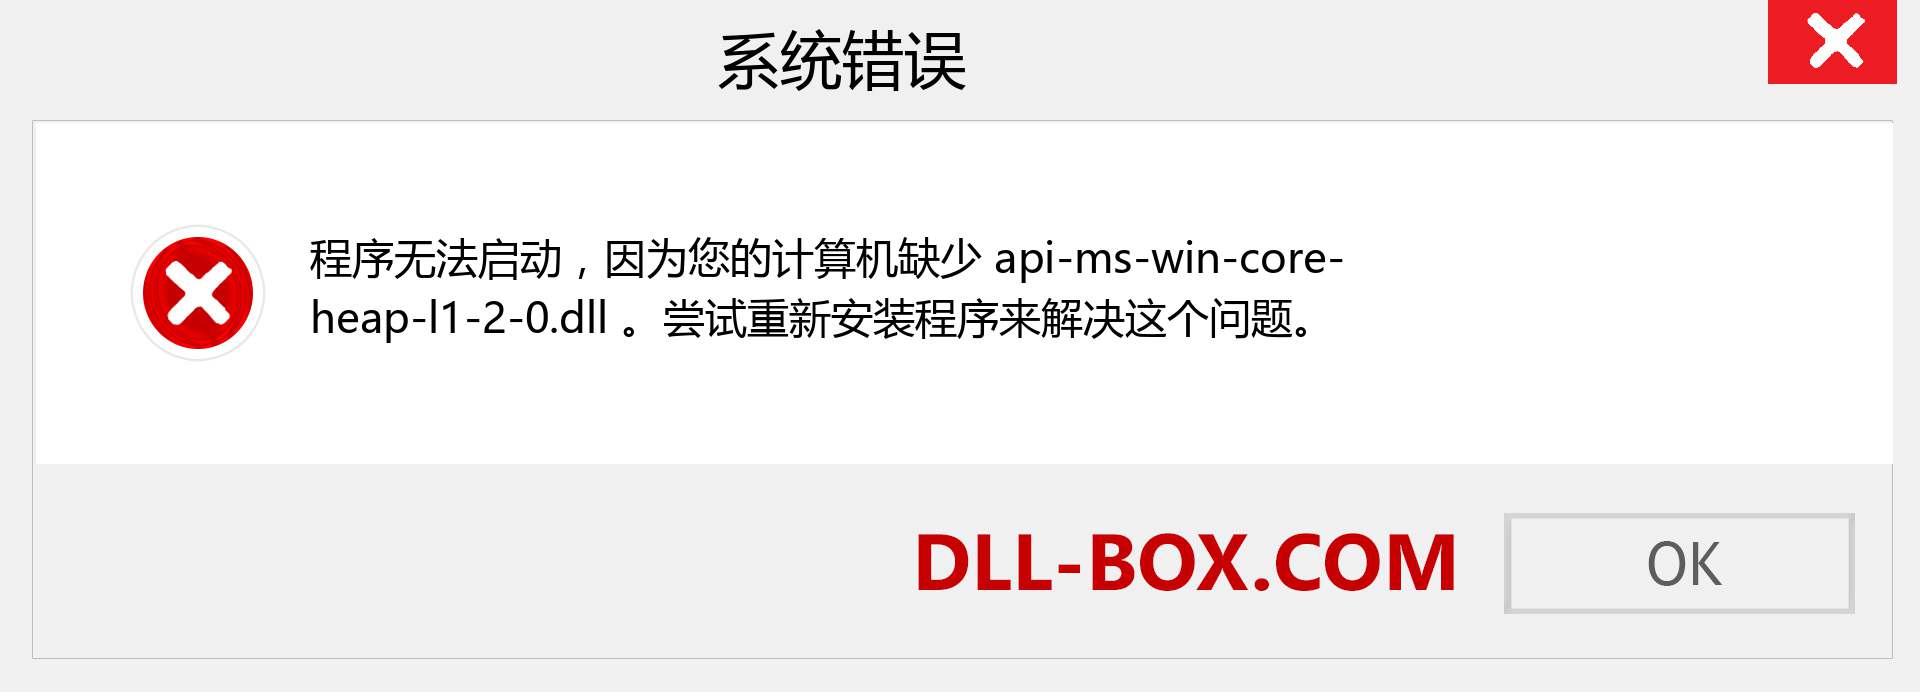 api-ms-win-core-heap-l1-2-0.dll 文件丢失？。 适用于 Windows 7、8、10 的下载 - 修复 Windows、照片、图像上的 api-ms-win-core-heap-l1-2-0 dll 丢失错误